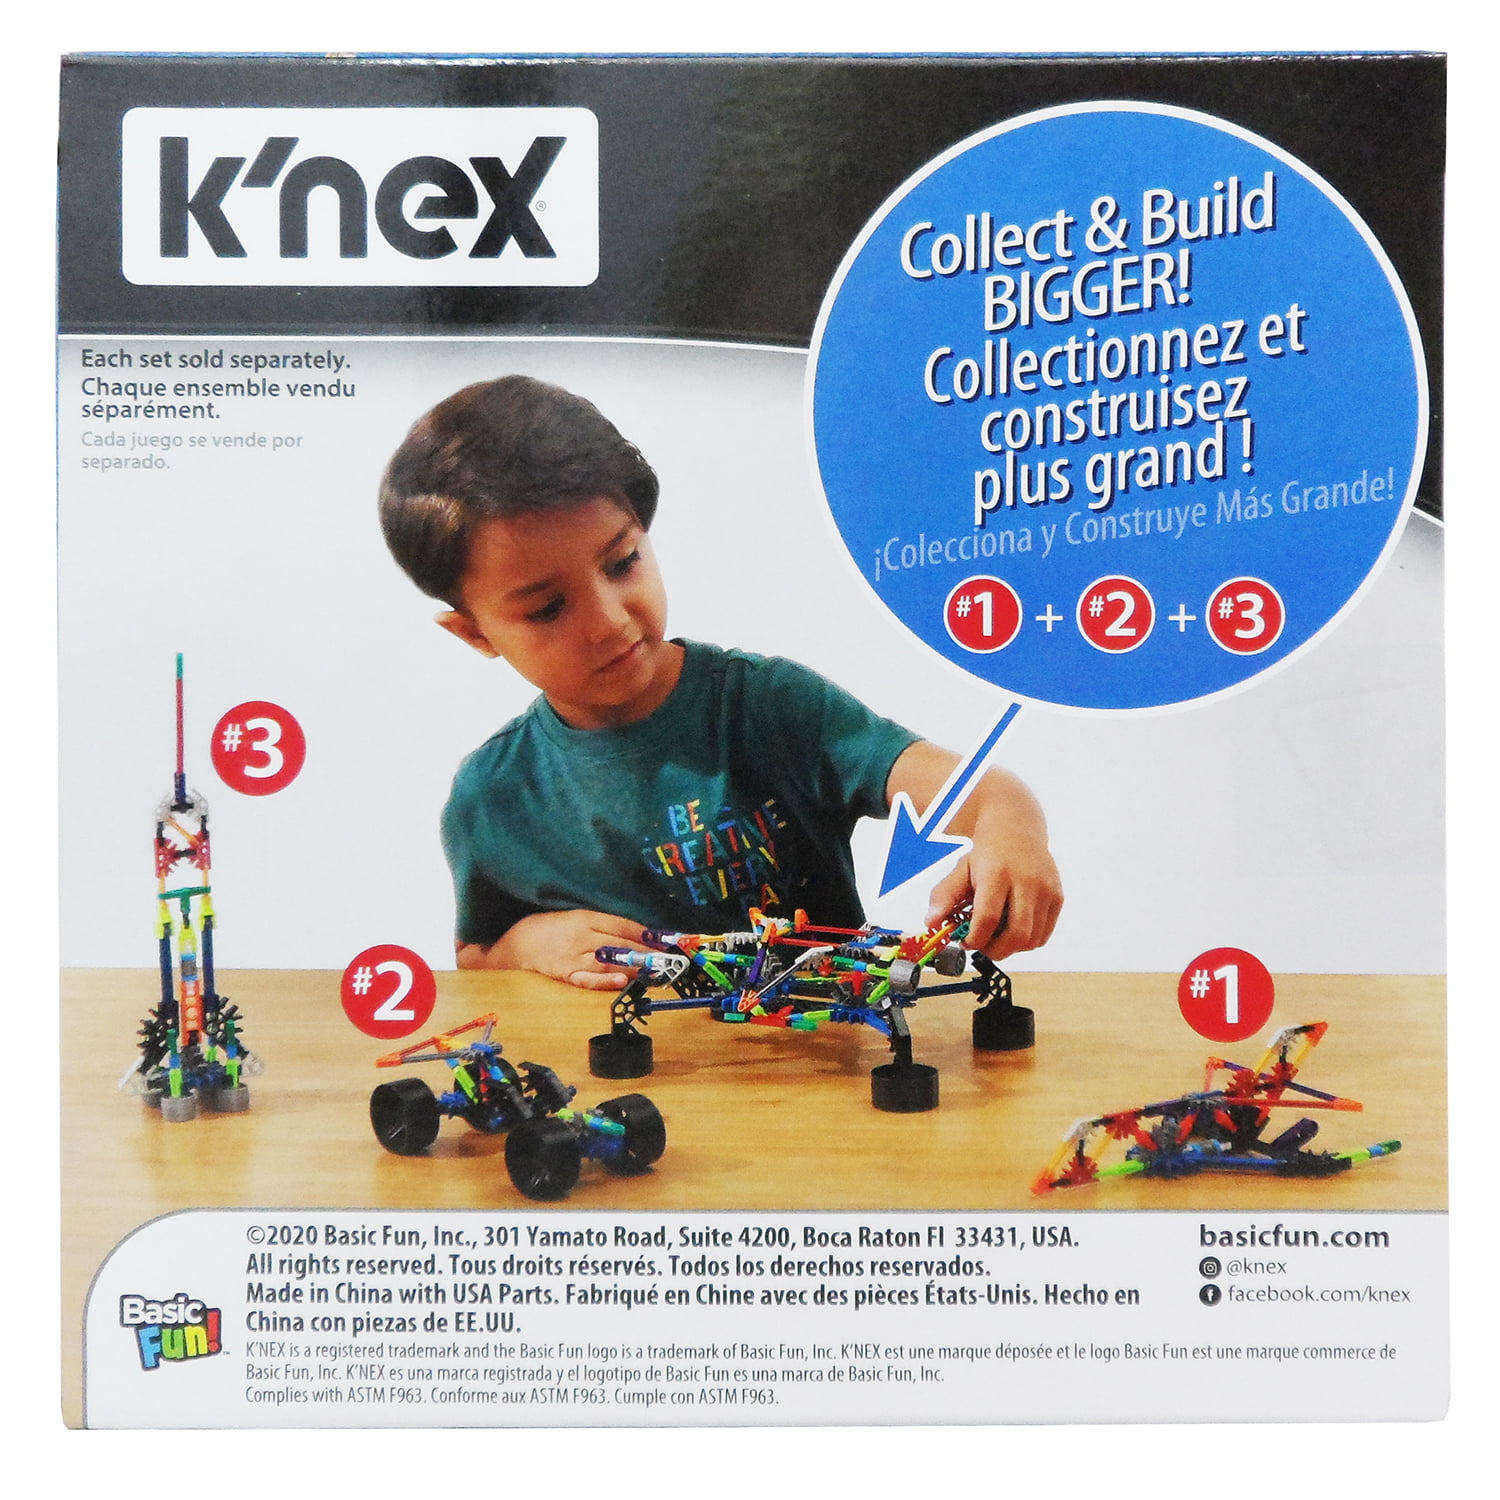 Multicolor K'Nex 17022 Imagine Set Jumbo Jet Construction-60 Pieces-Ages 5-10 Construction Toy